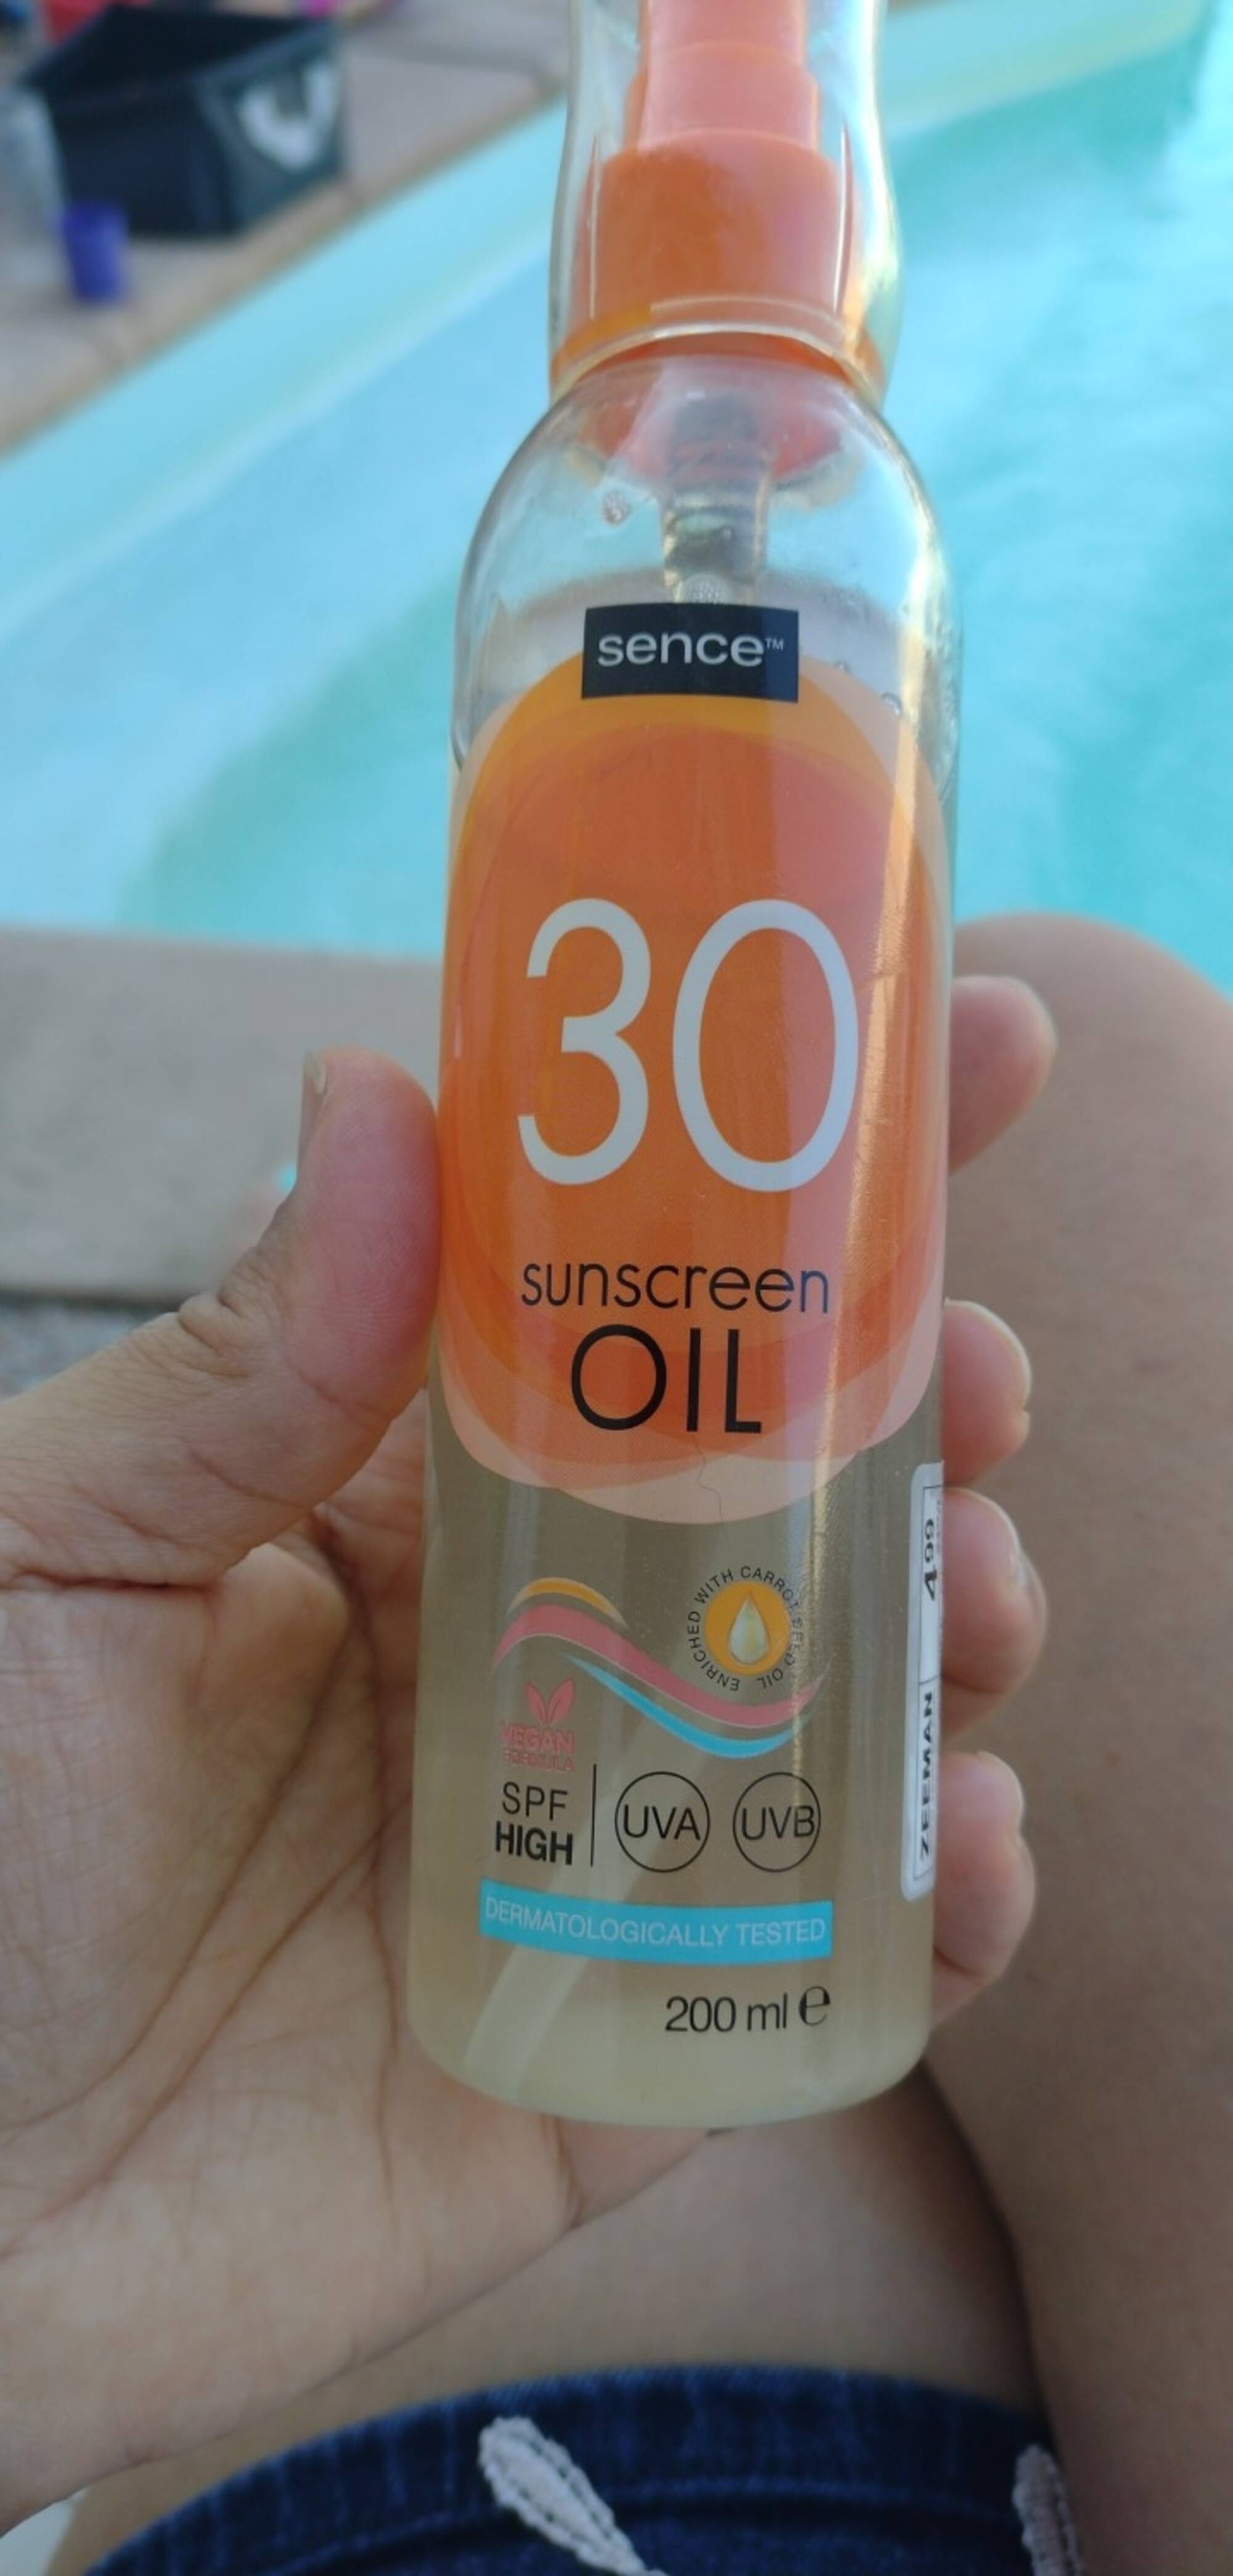 SENCE - Sunscreen oil SPF 30 